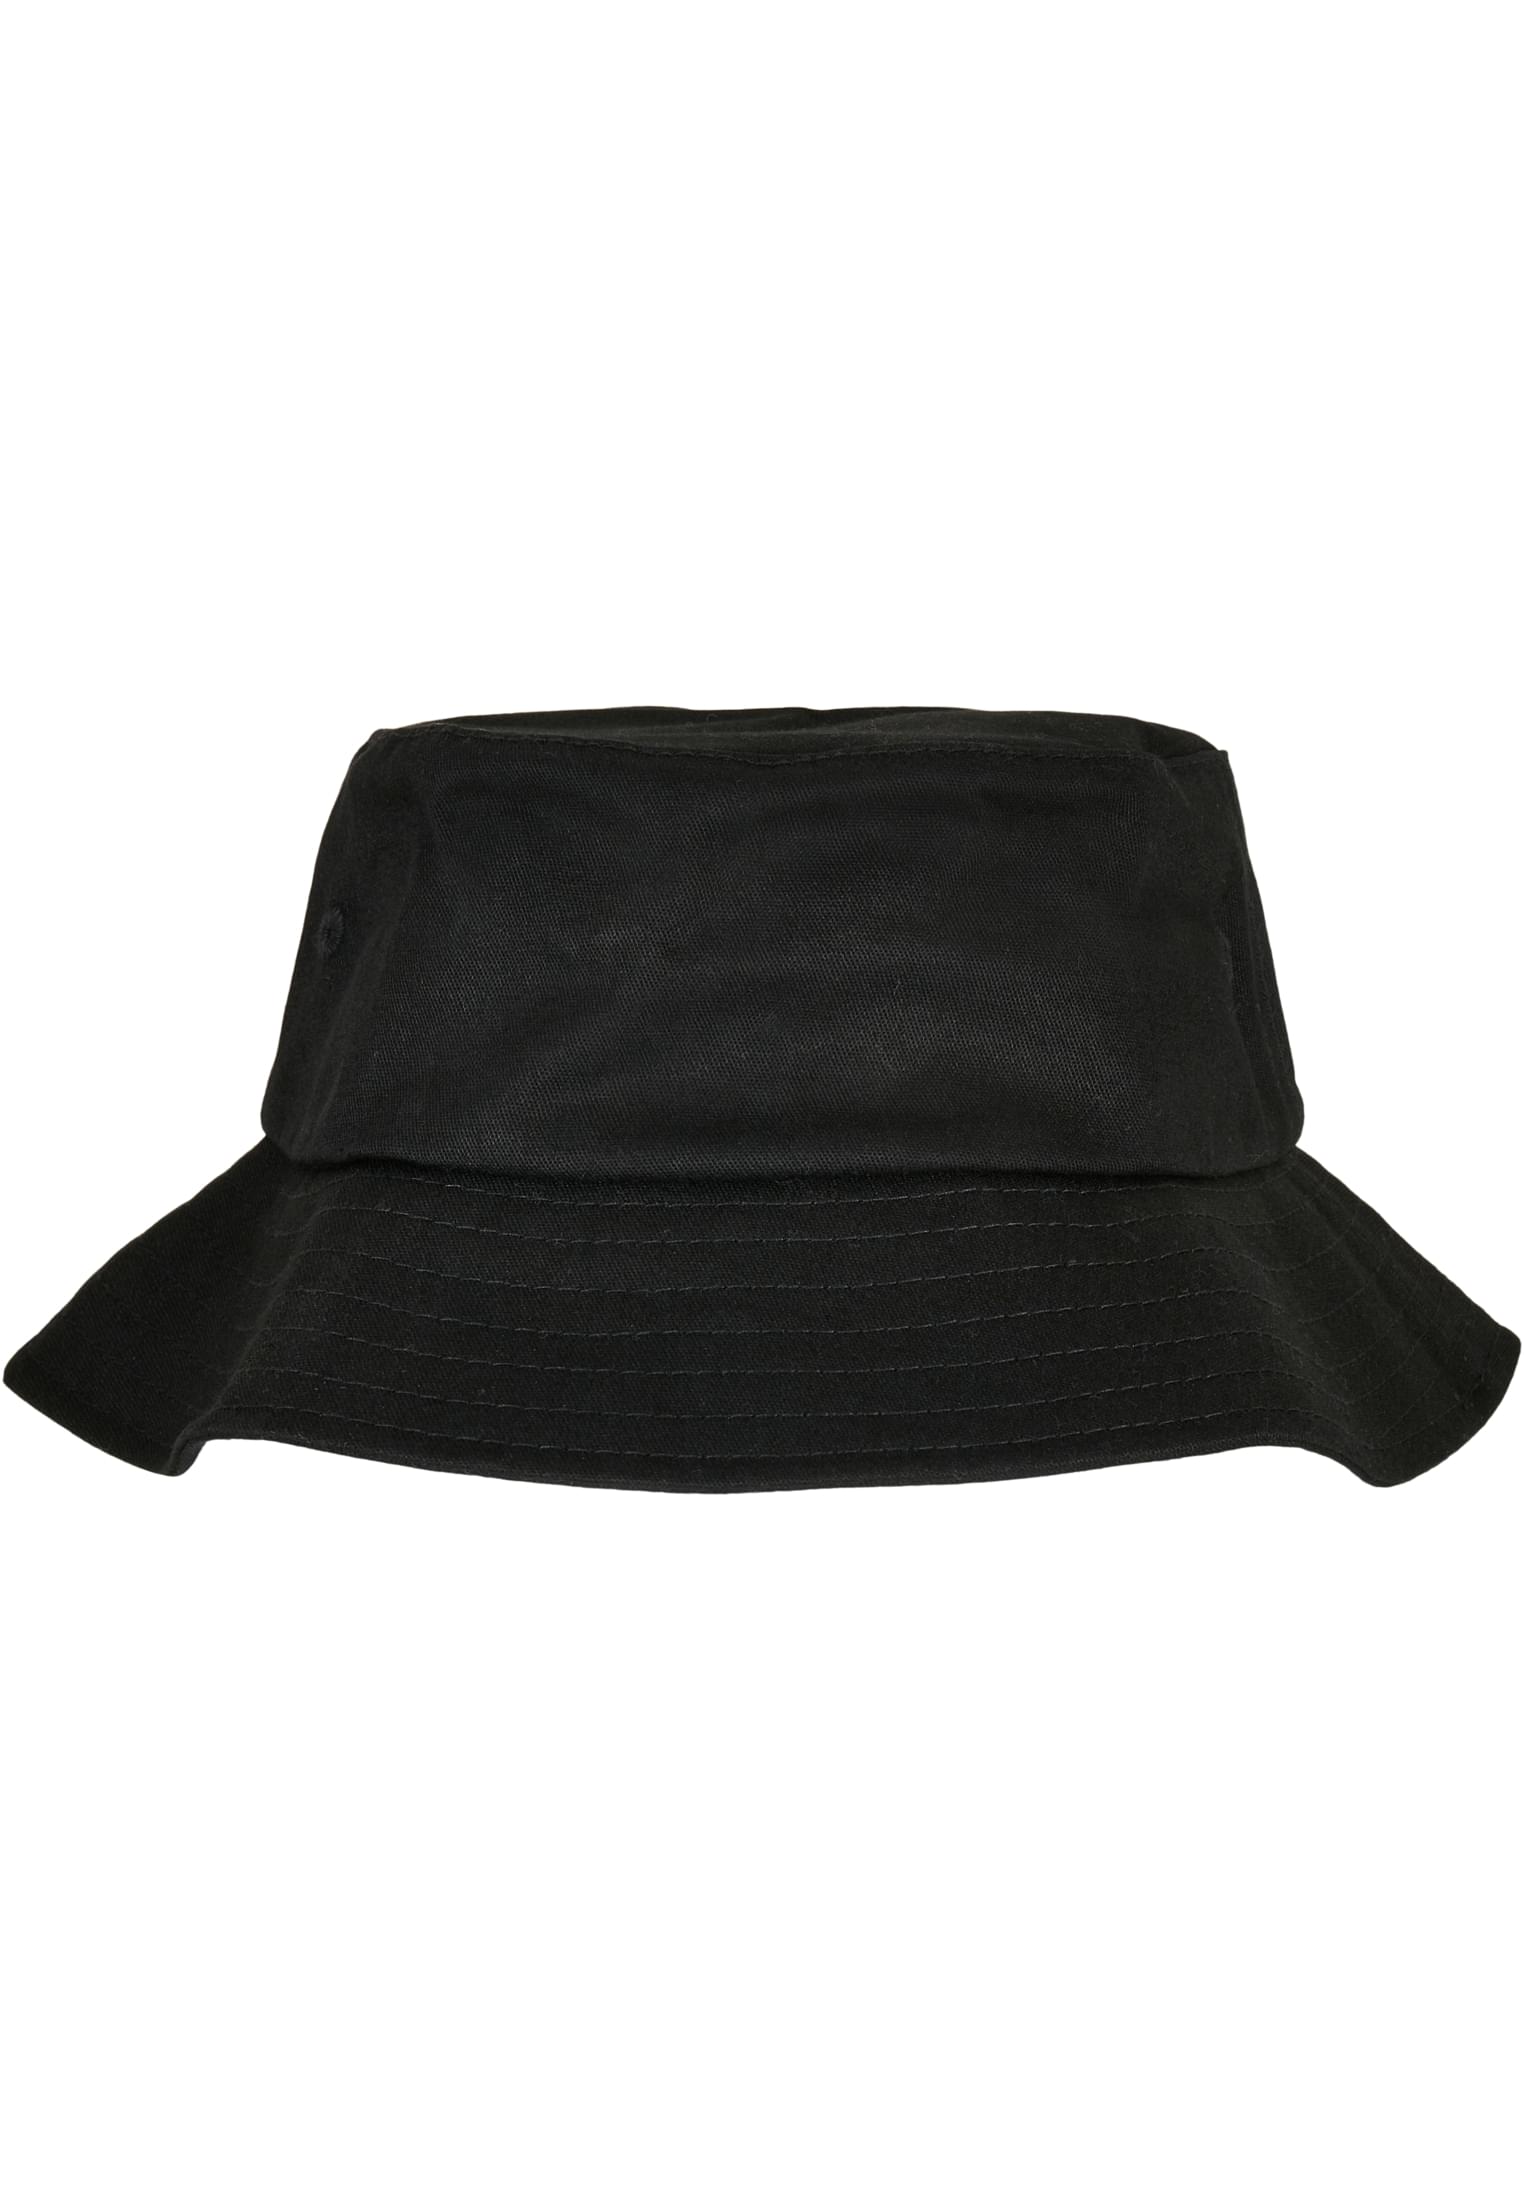 Cotton Bucket Kids-5003KH Twill Hat Flexfit